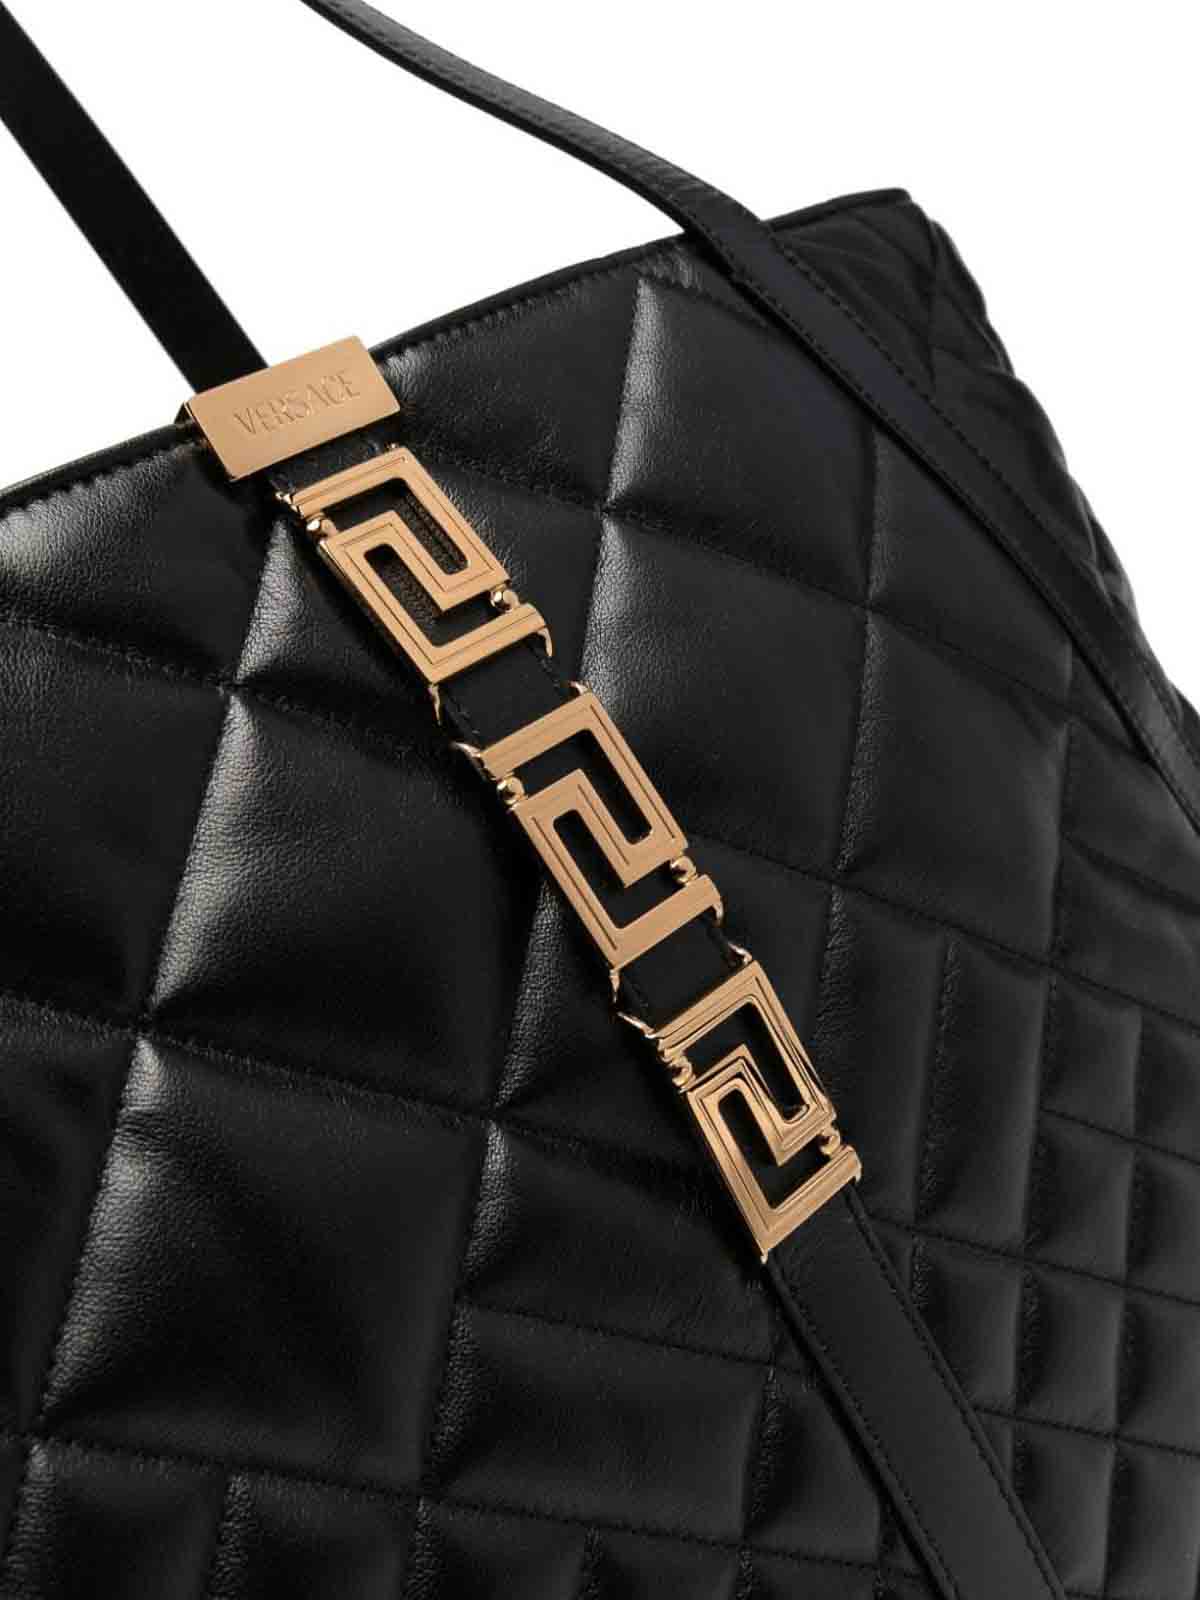 Versace Black Greca Goddess Shoulder Bag